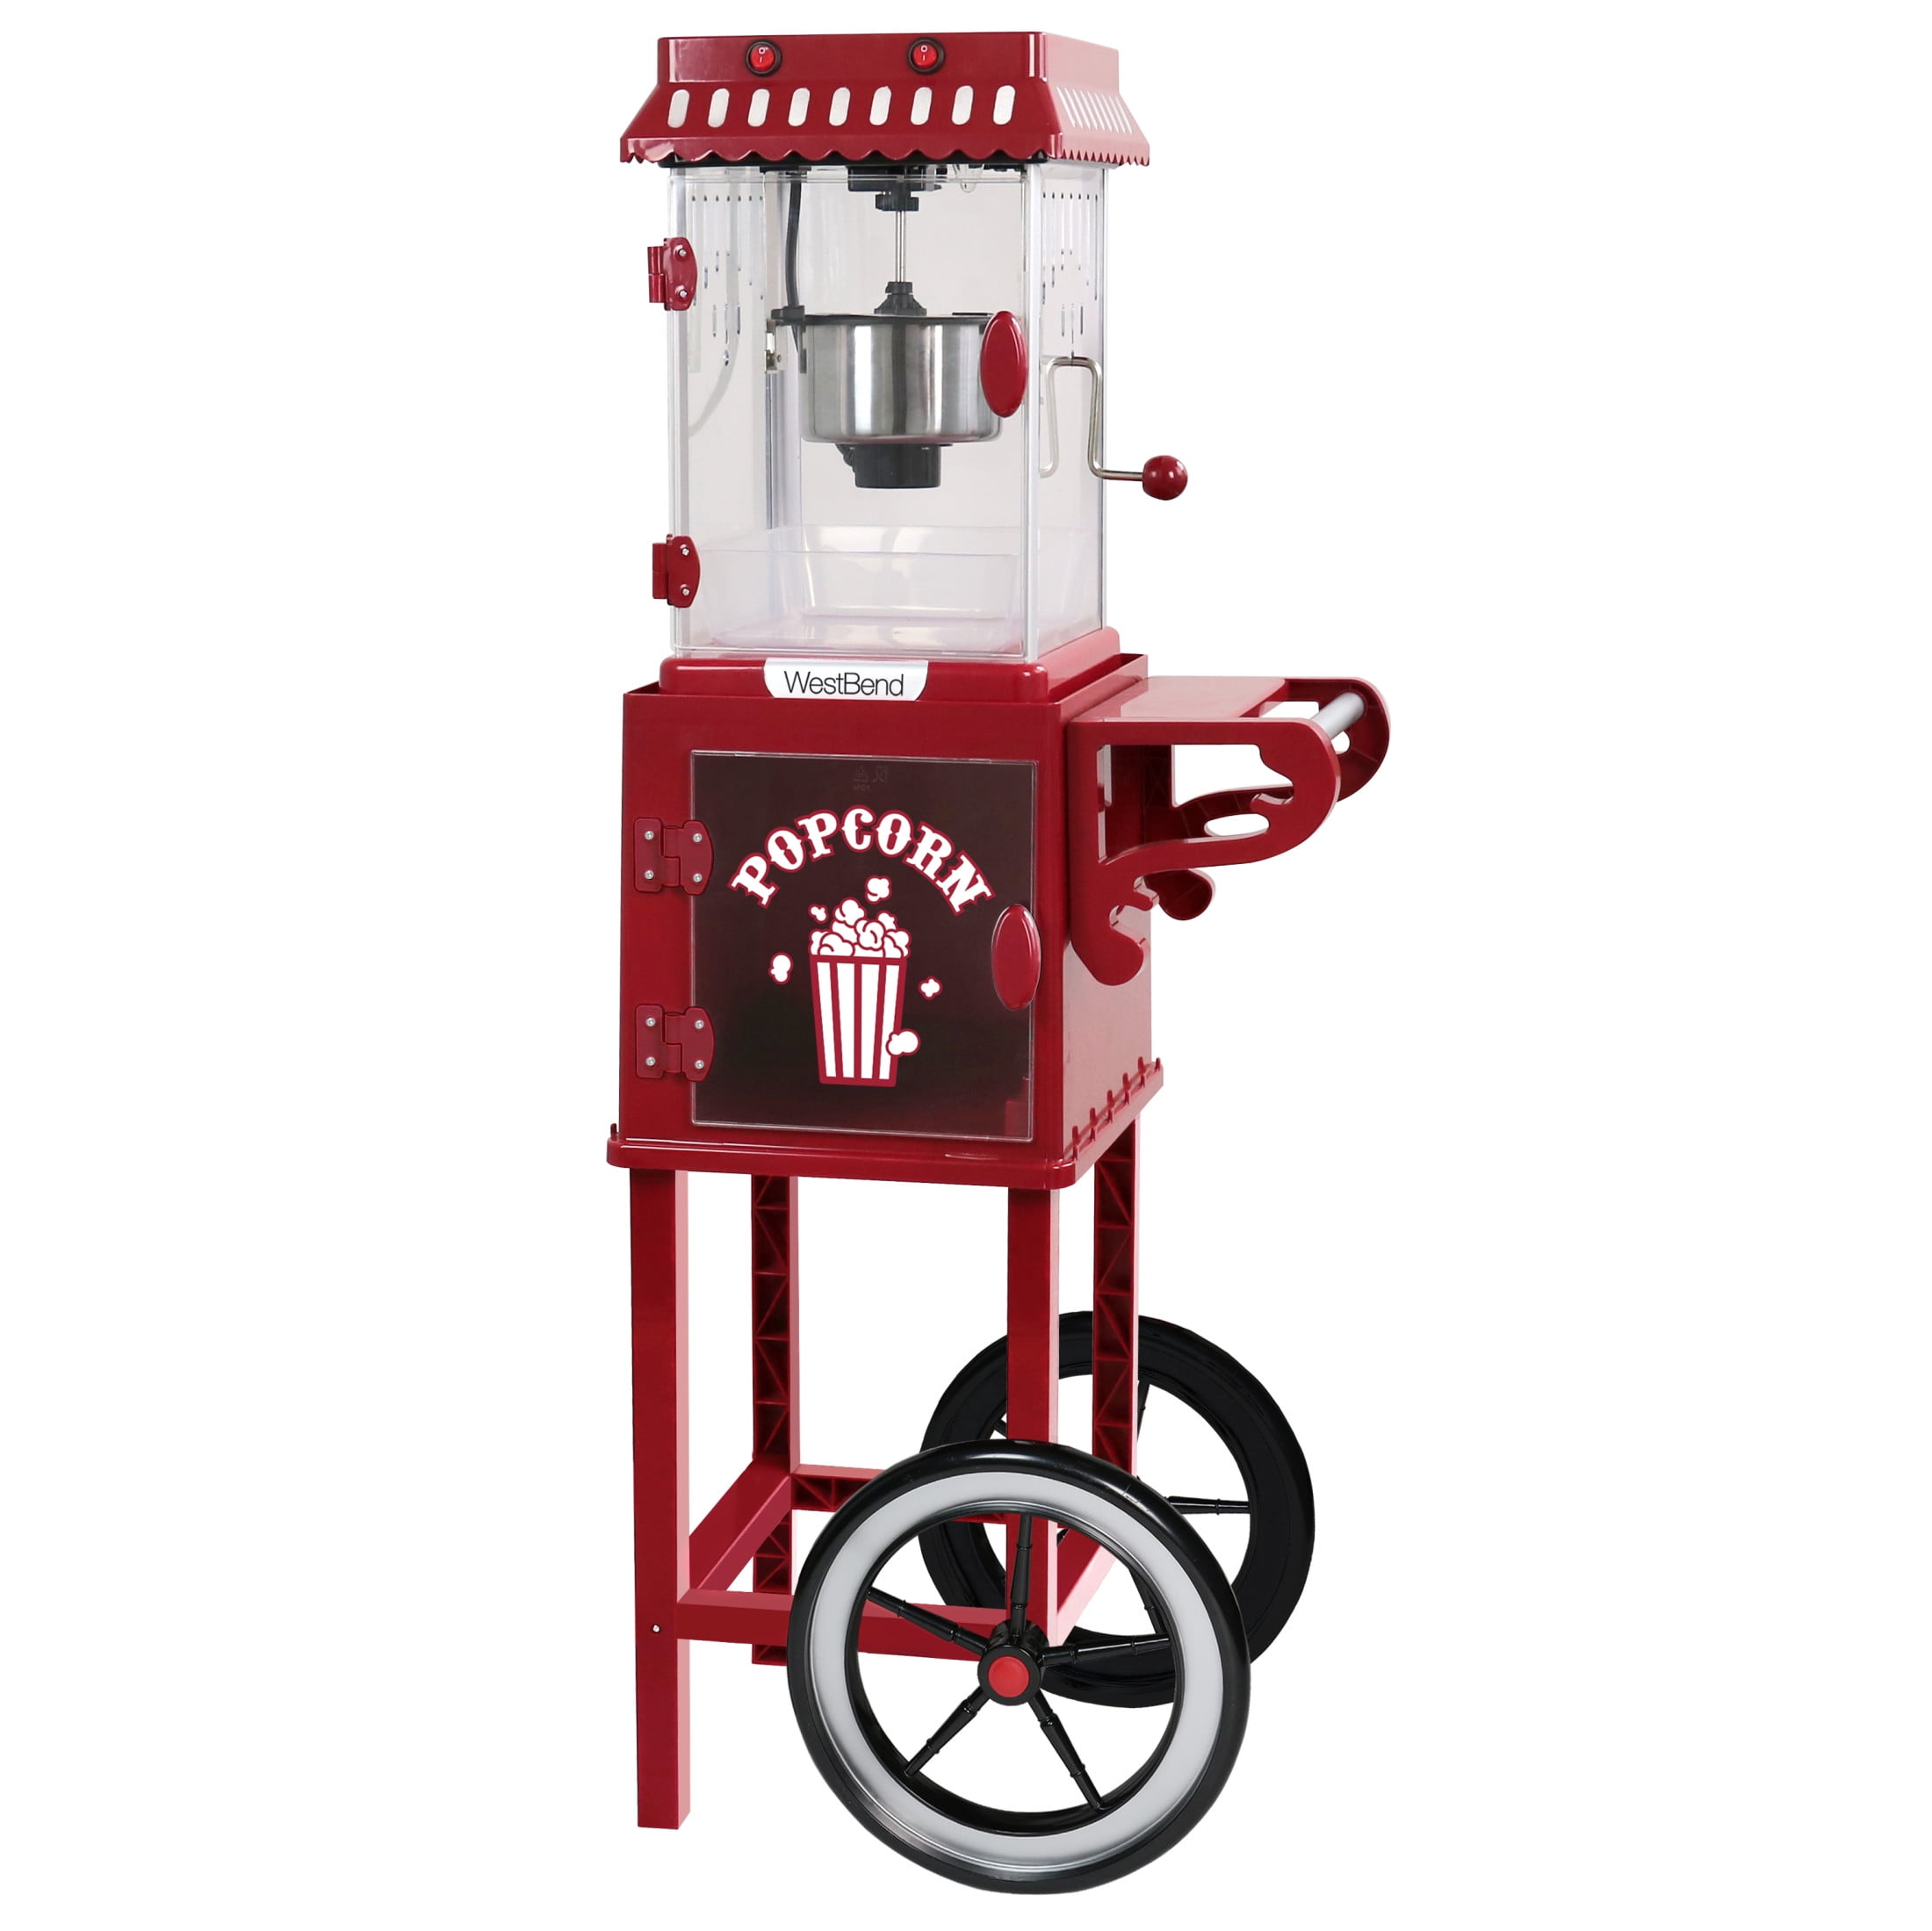  West Bend 82707 Popcorn Machine, Red: Home & Kitchen